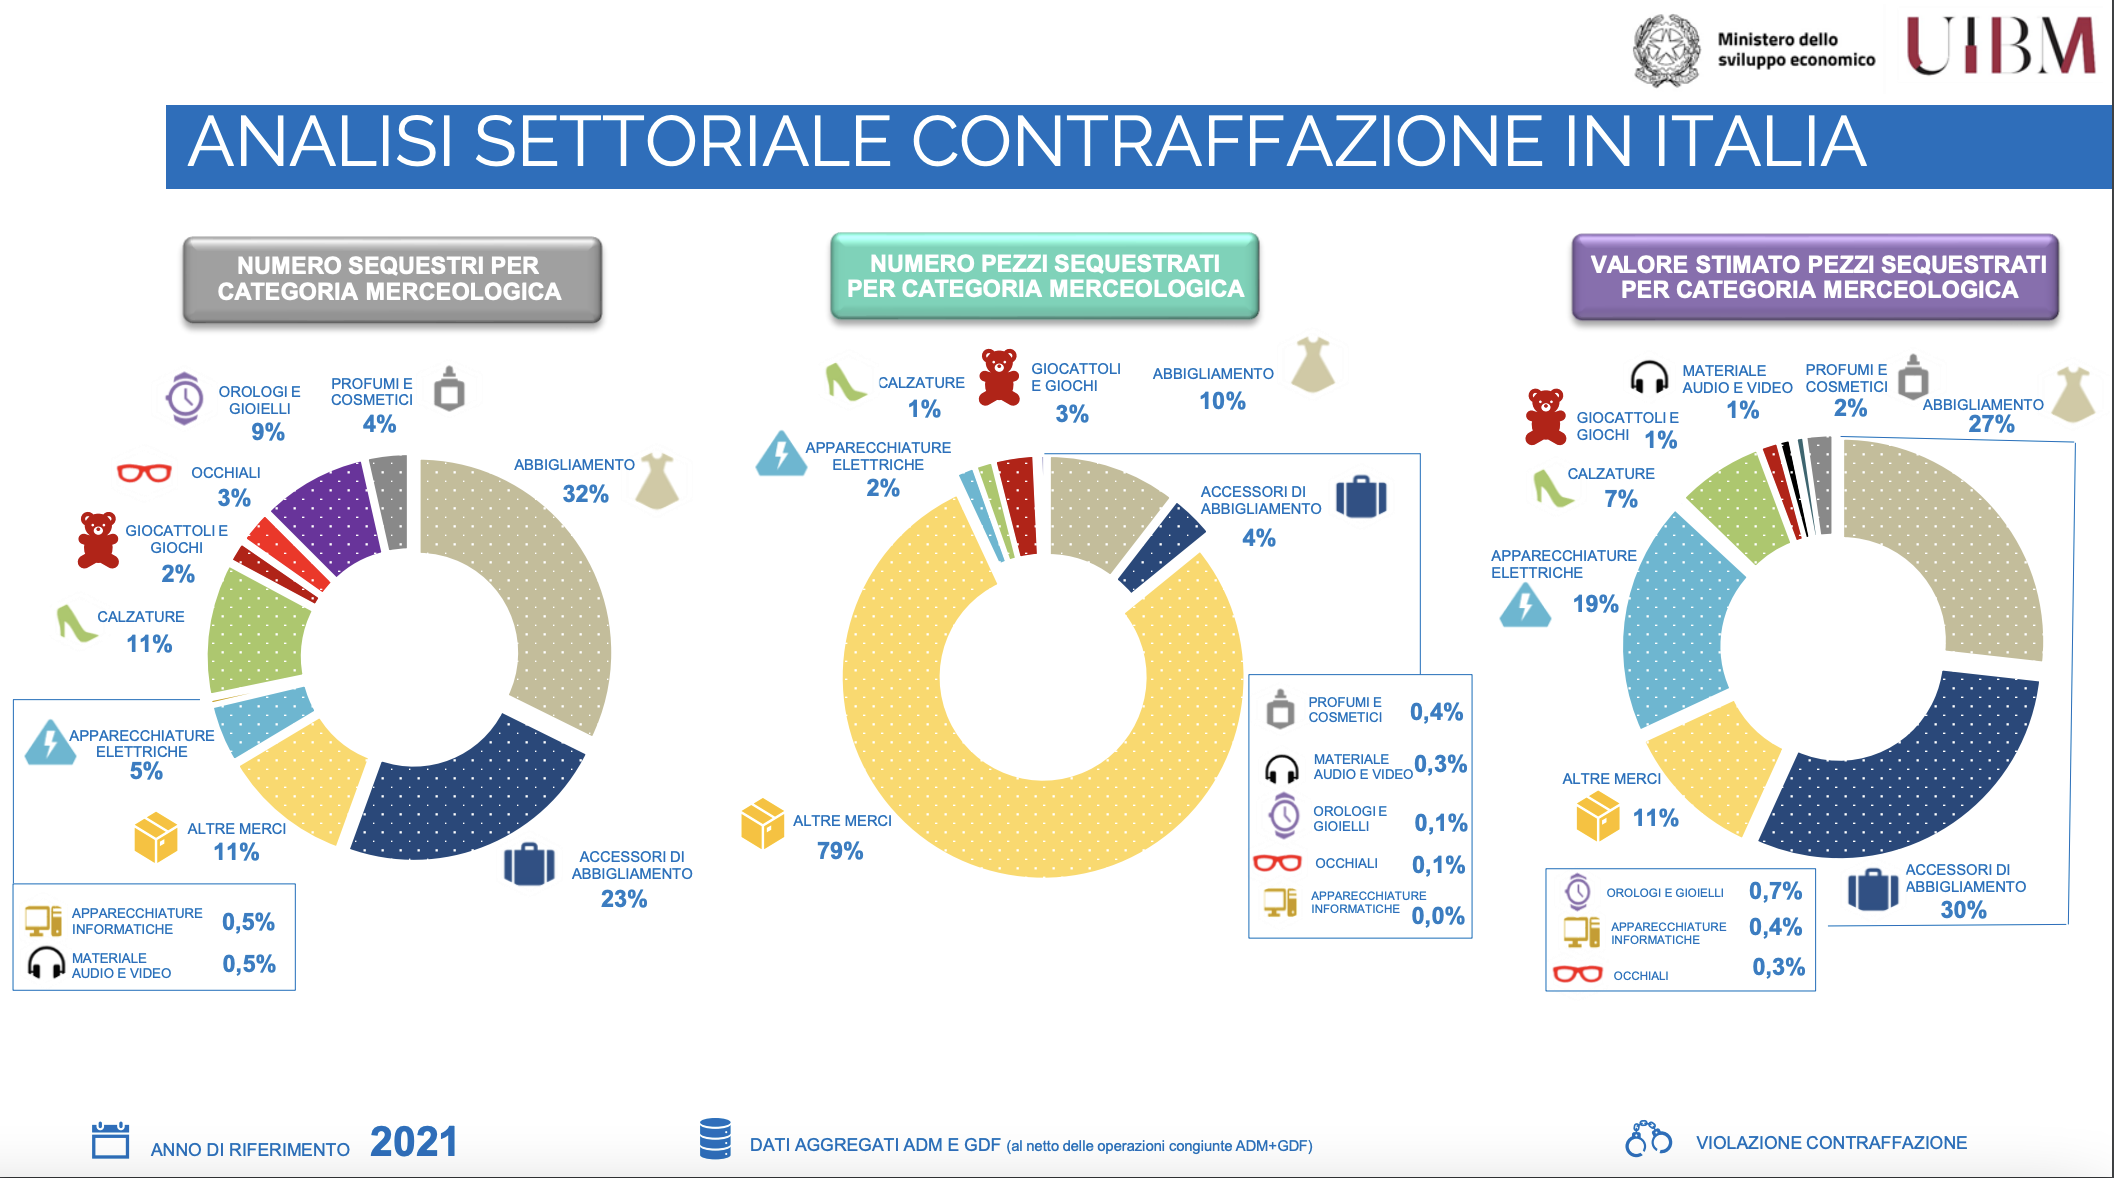 Analisi settoriale contraffazione in Italia